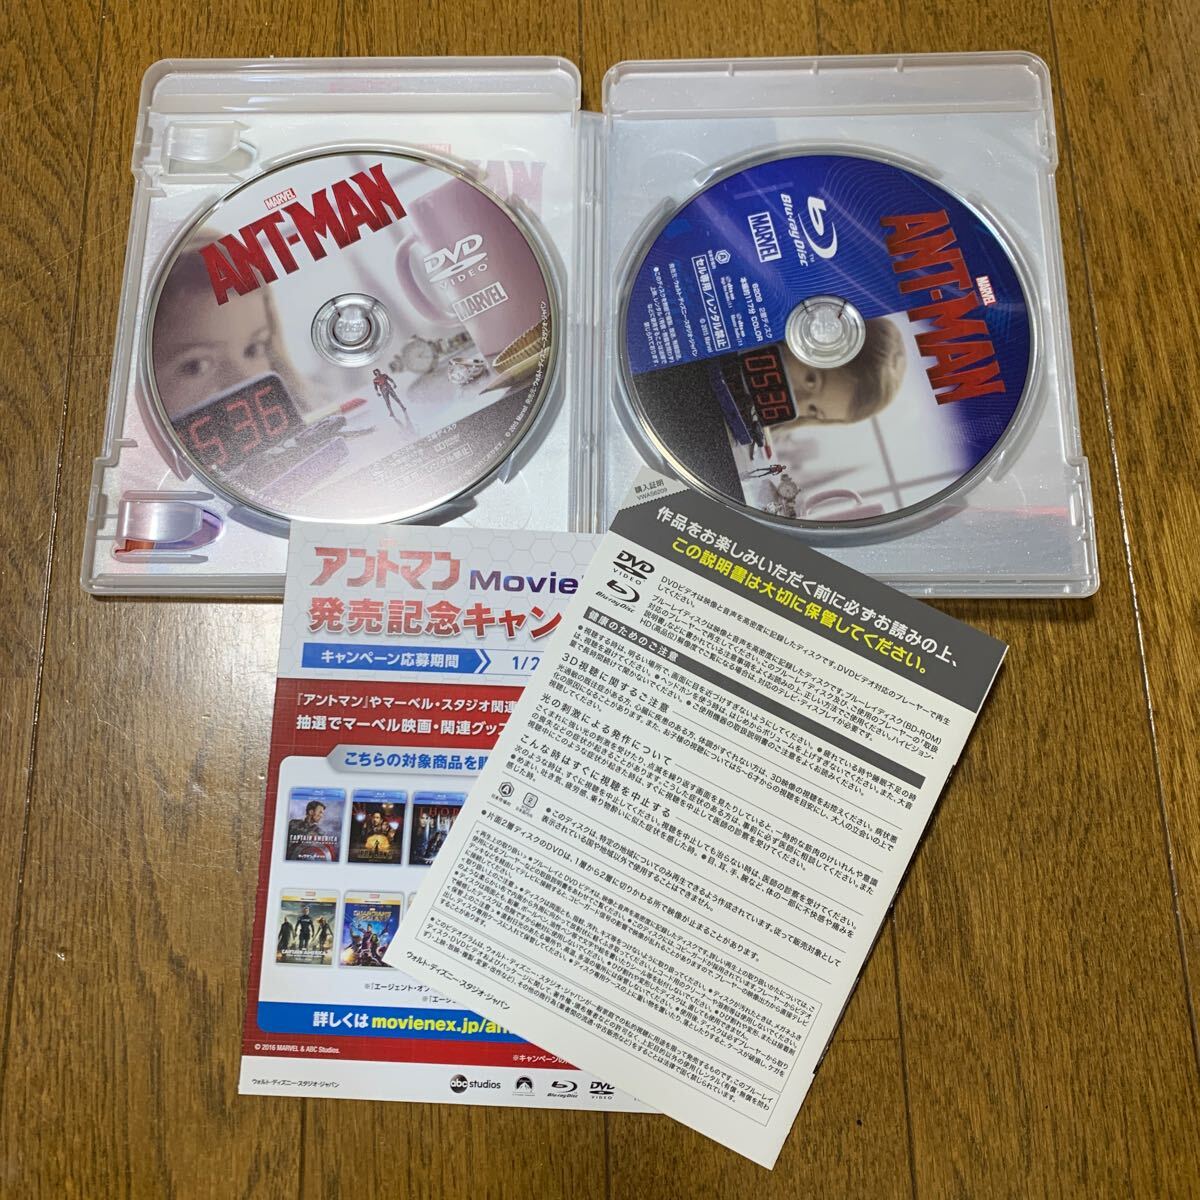 「アントマン MovieNEX('15米)〈Blu-ray、DVD2枚組〉」_画像2